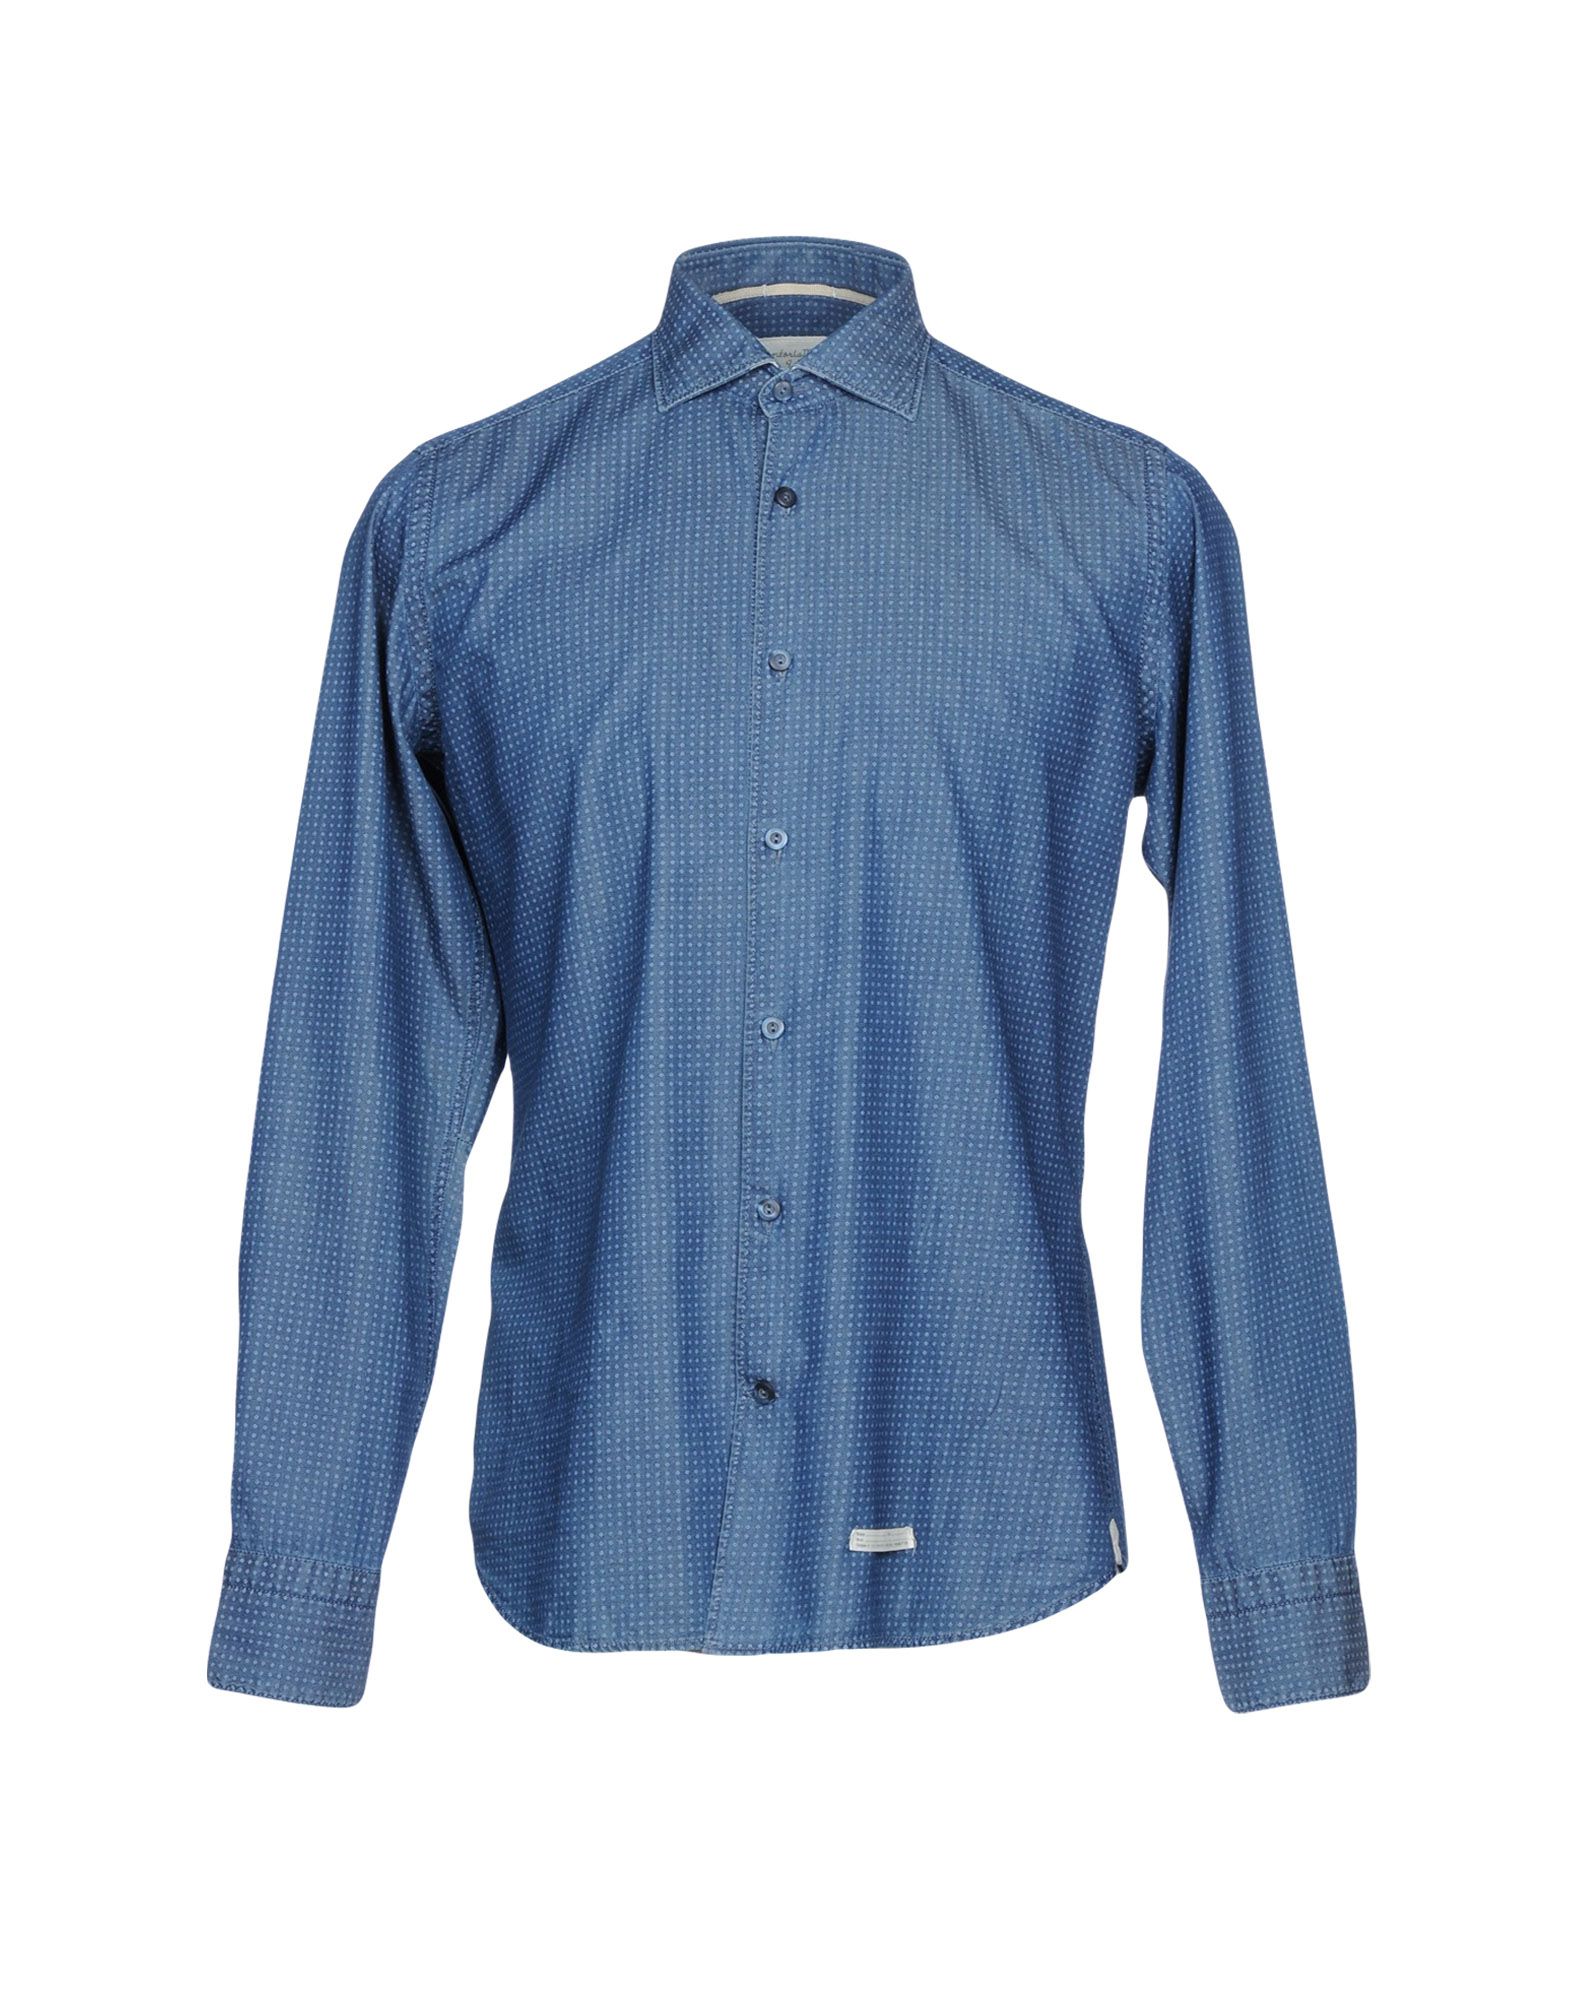 《送料無料》TINTORIA MATTEI 954 メンズ デニムシャツ ブルー 40 コットン 100%